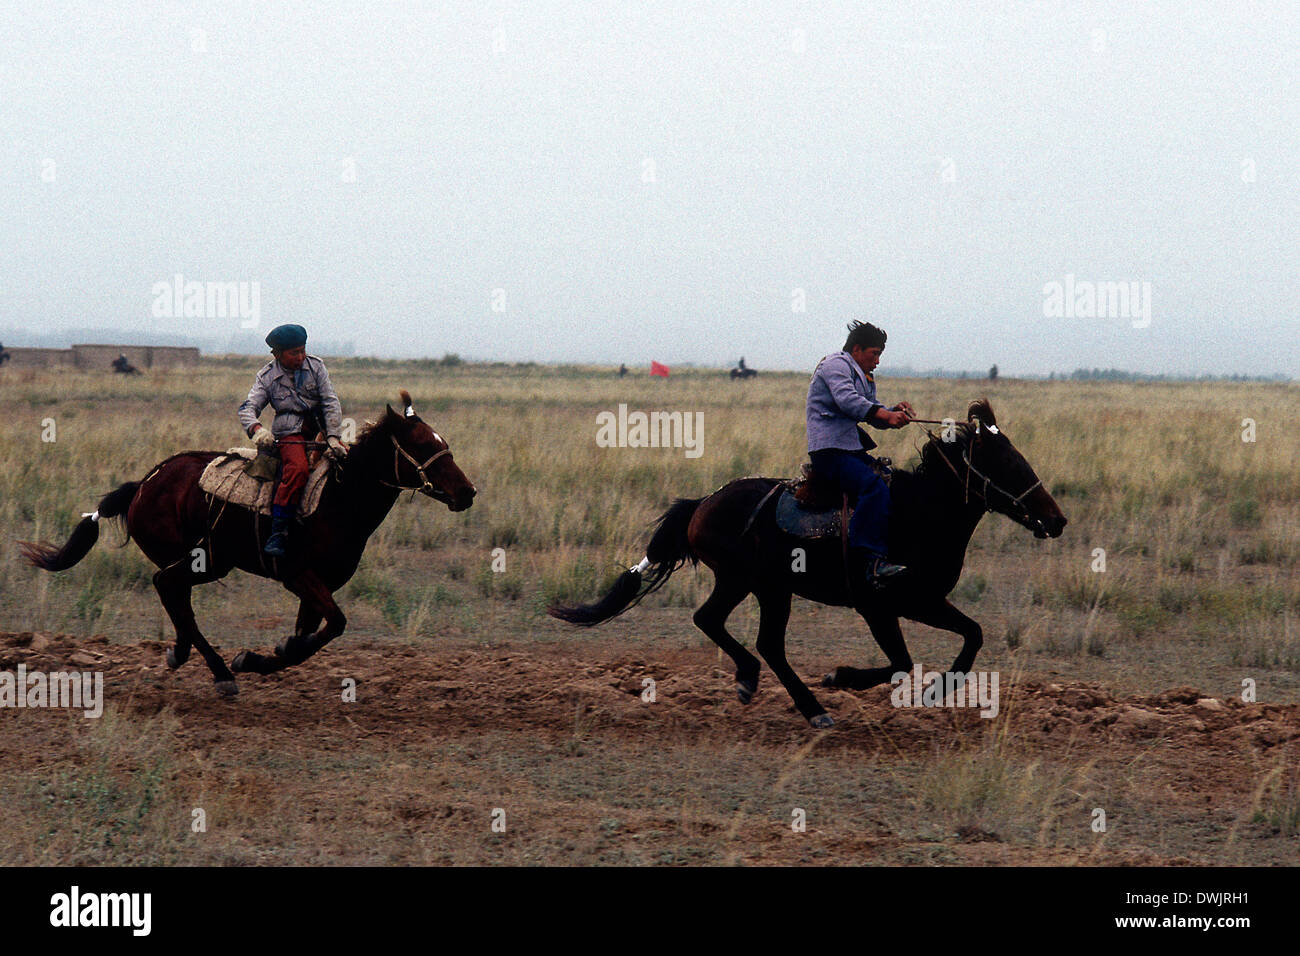 Zwei kasachische Reiter in einem Rennen am Yinning, Kasachstan, in der Nähe der alten sowjetischen russischen Grenze. Stockfoto